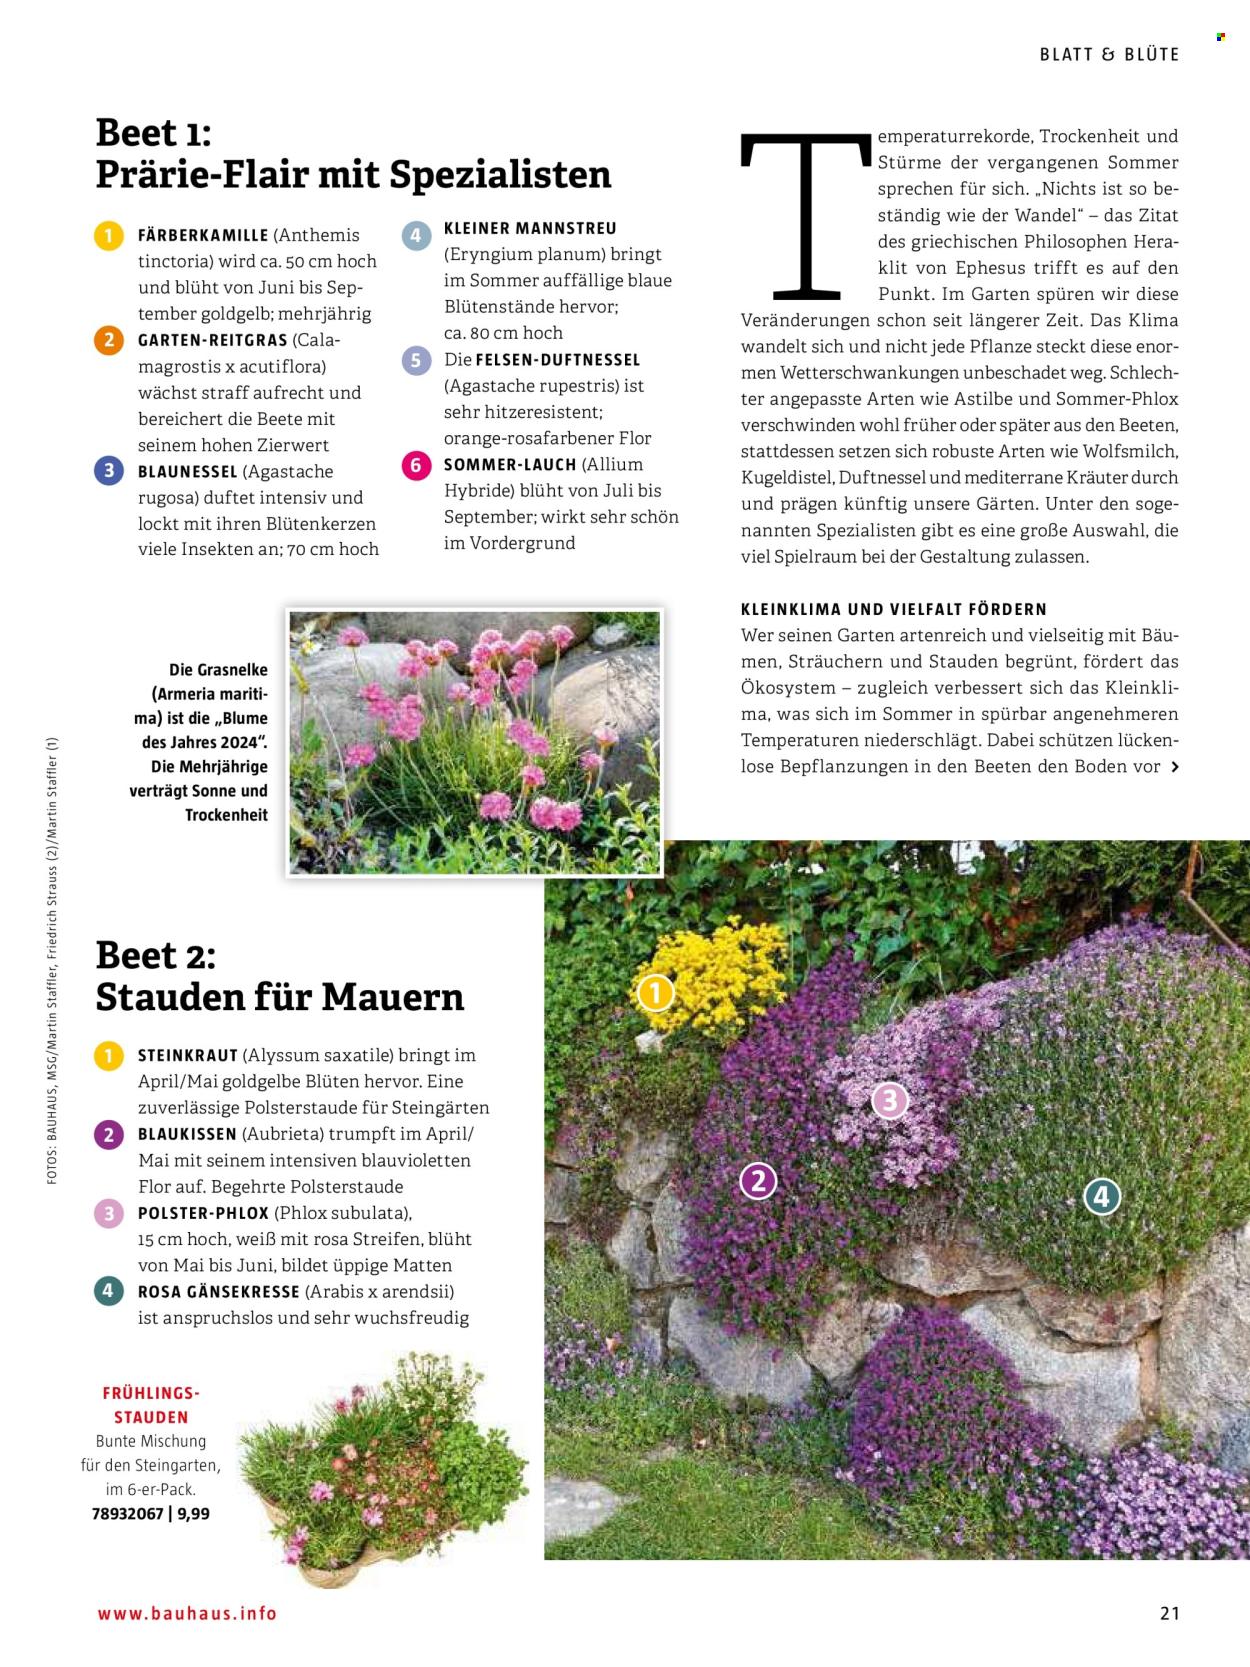 thumbnail - Prospekte Bauhaus - Produkte in Aktion - Stauden, Blumenstrauß, Draußen-Pflanze, Polsterstaude, Phlox, Blume. Seite 21.